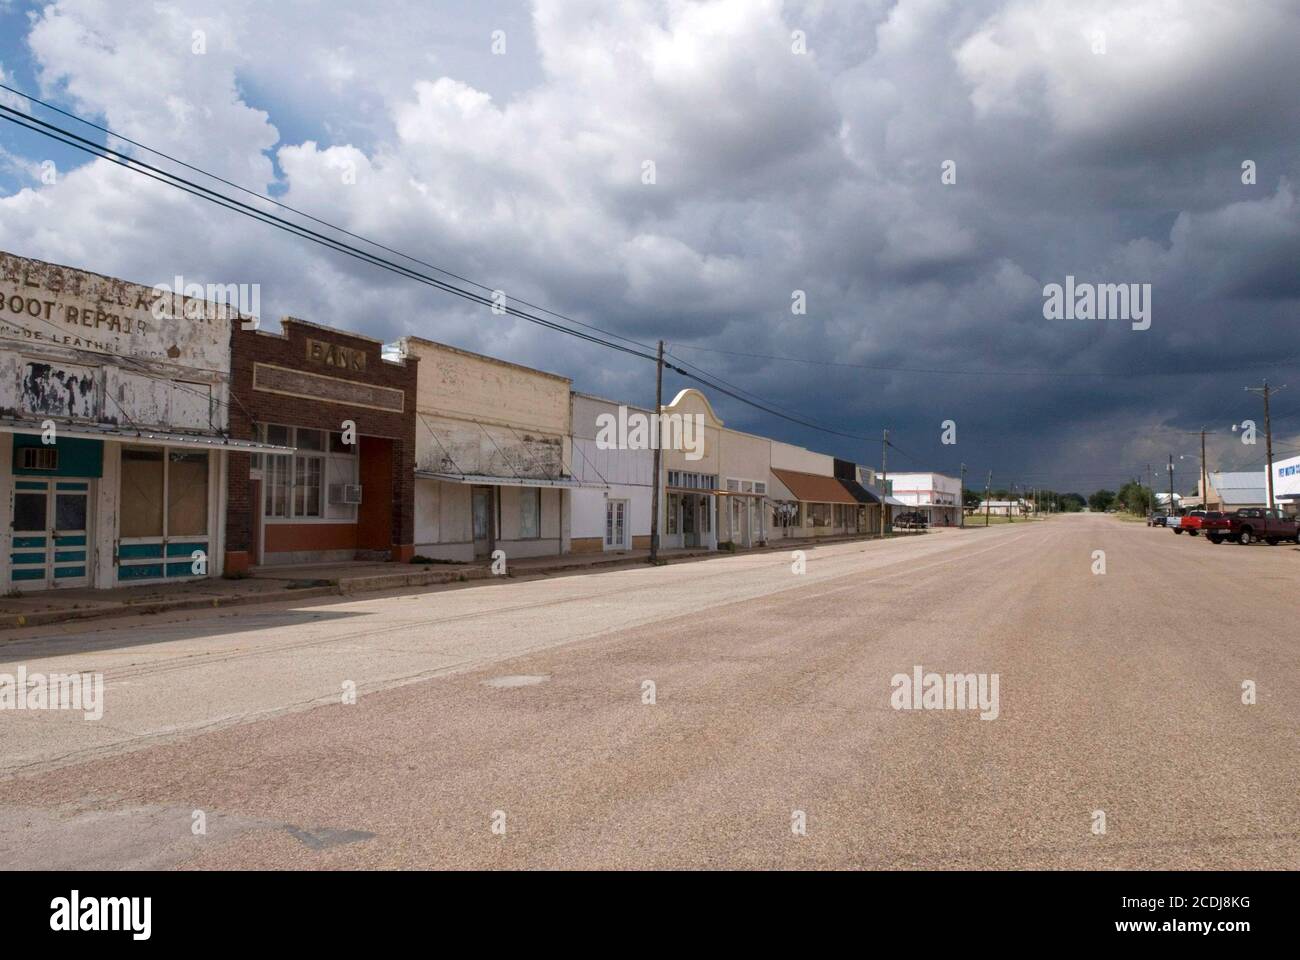 Robert Lee, TX 26. Juli 2007: Sturmwolken Rollen in Richtung Innenstadt Robert Lee, TX, der Grafschaftssitz von Coke County, Bevölkerung 1,500 Hardy Texans. ©Bob Daemmrich Stockfoto